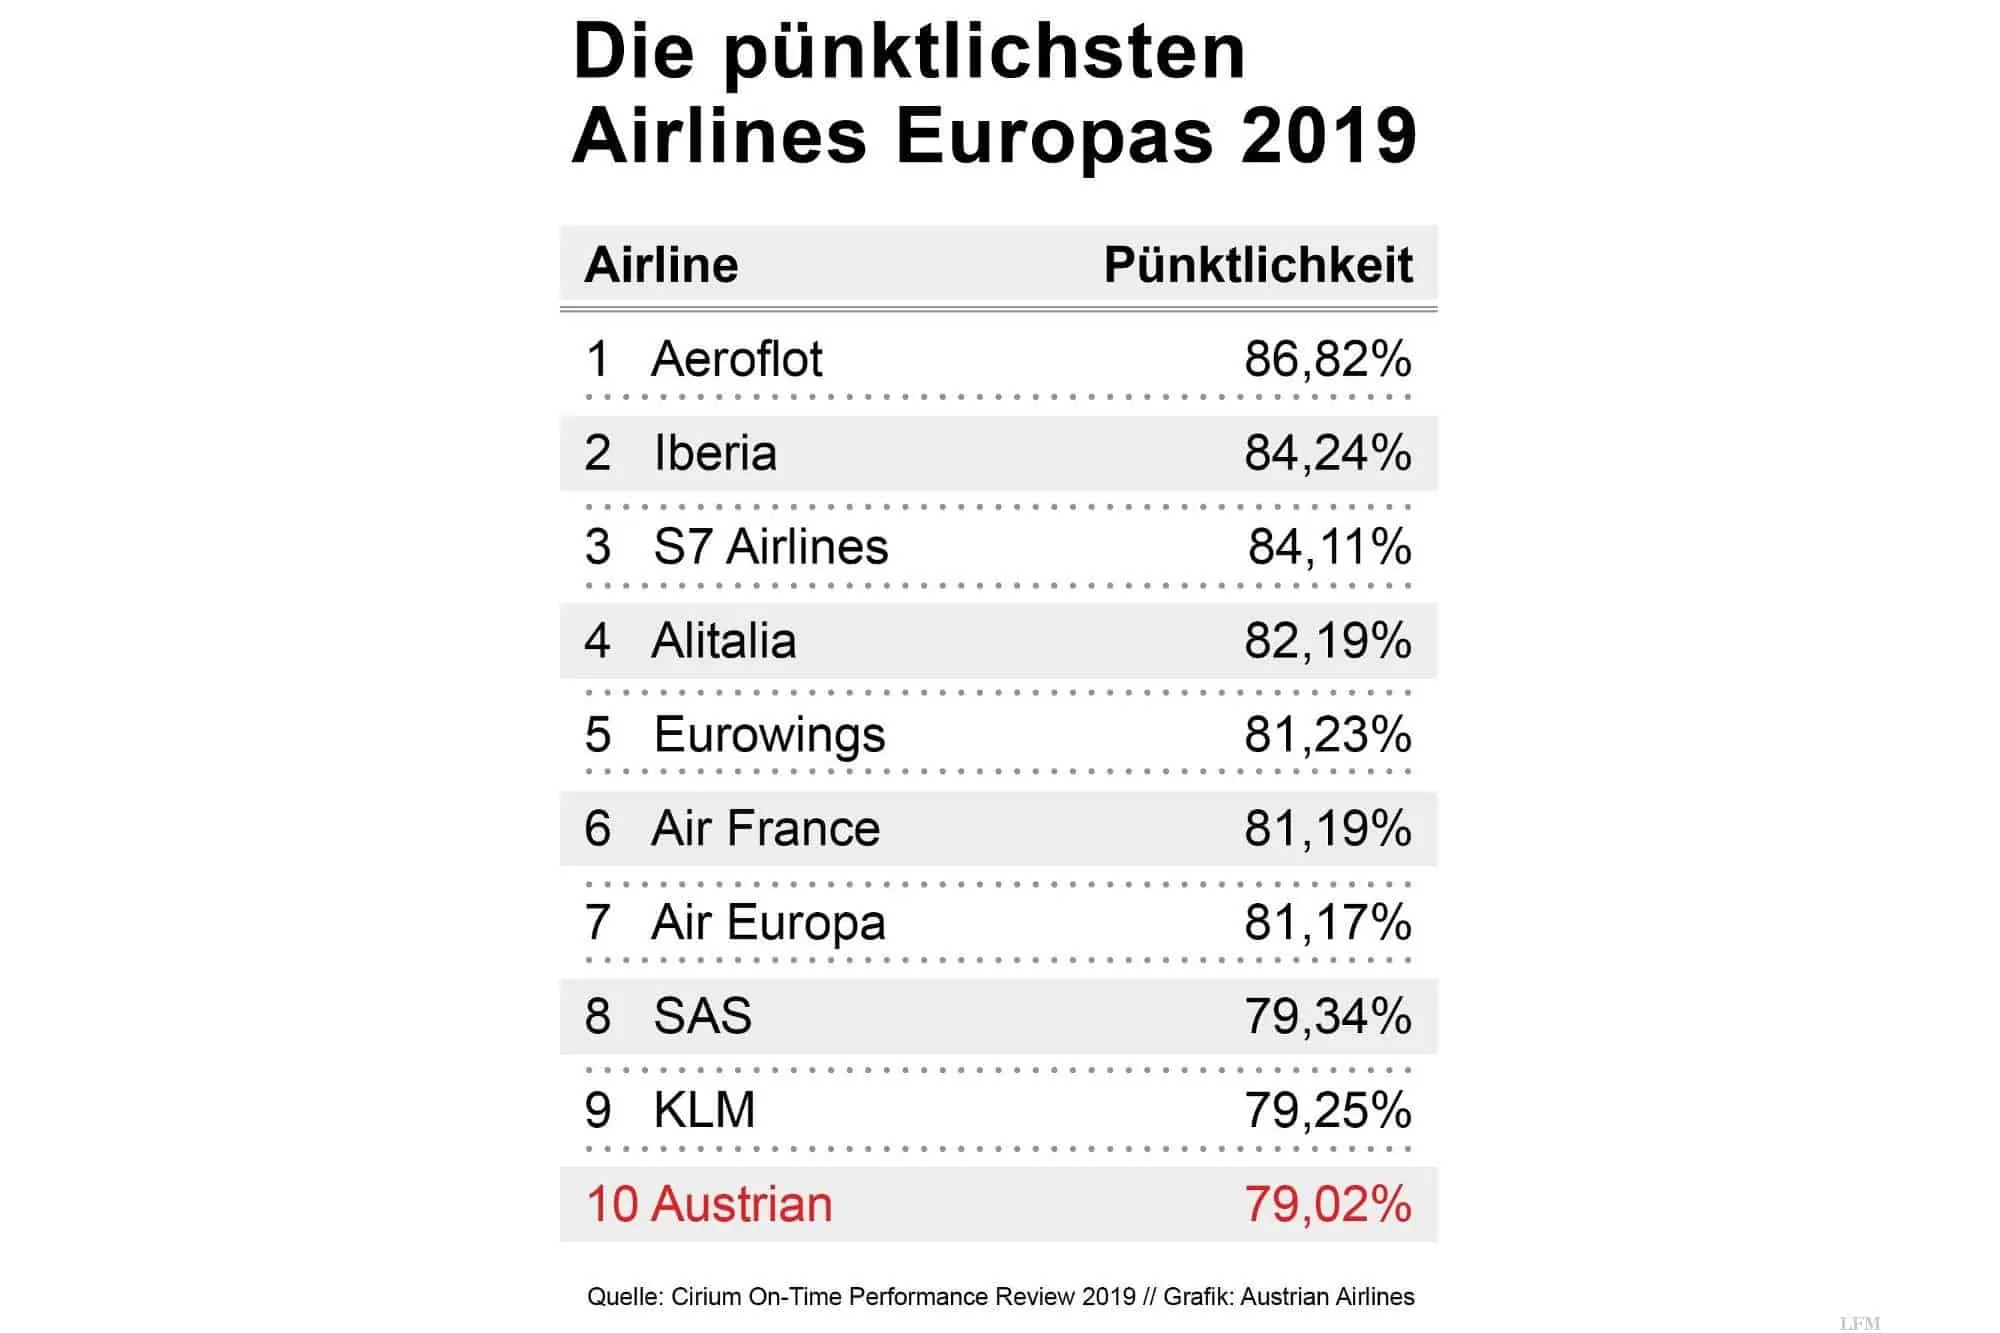 Die pünktlichsten Airlines Europas.